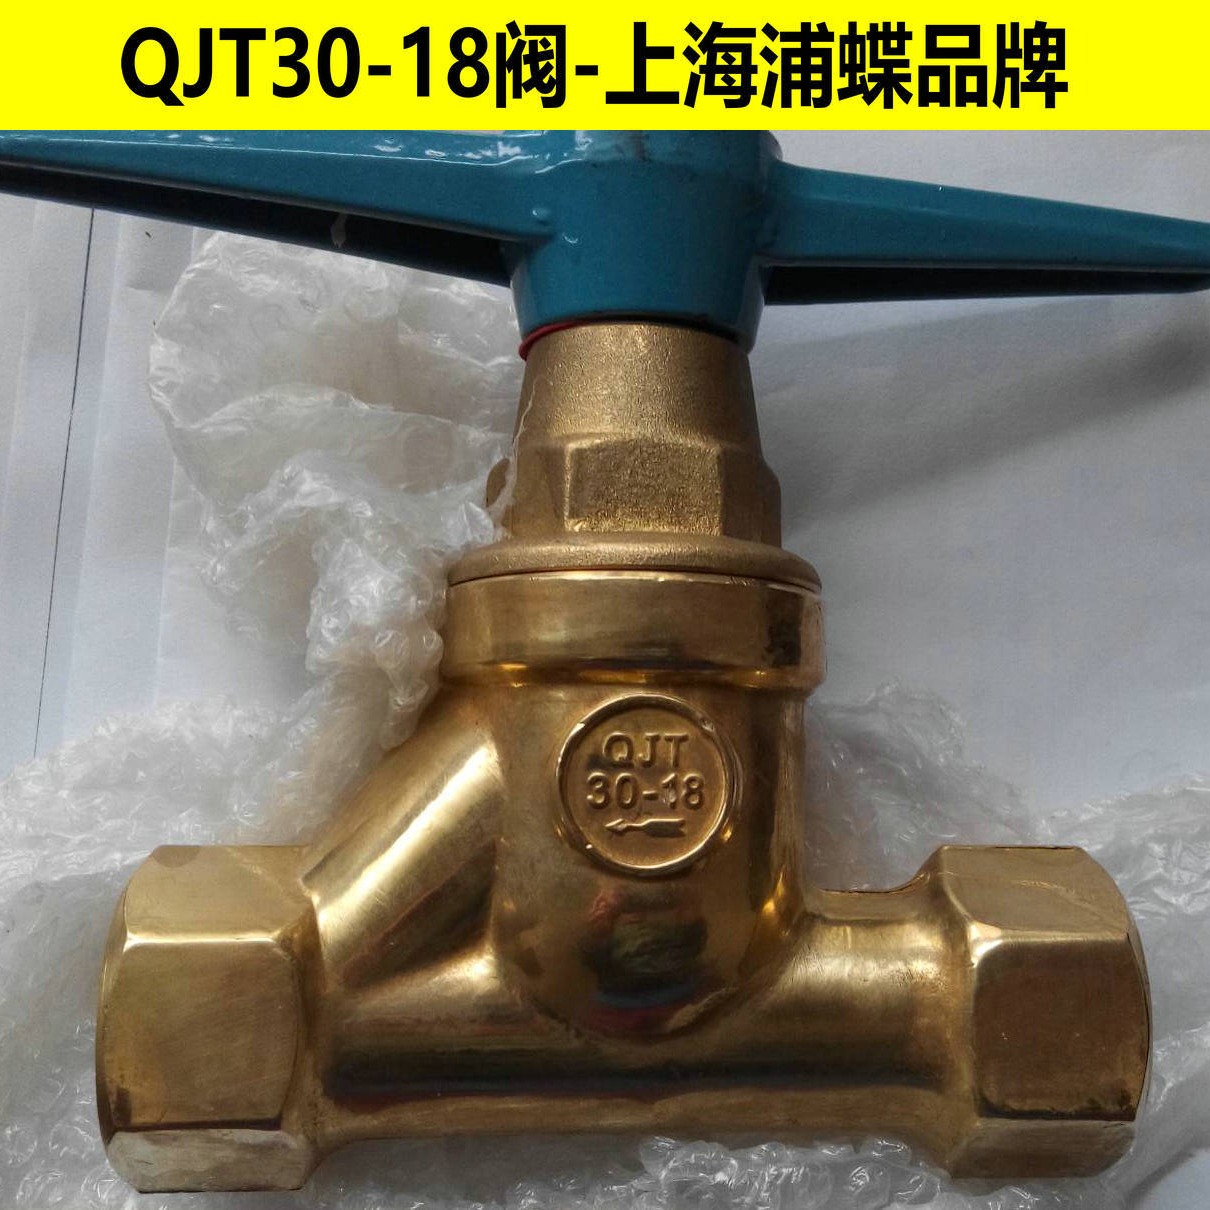 QJT30-18铜截止阀 上海浦蝶品牌